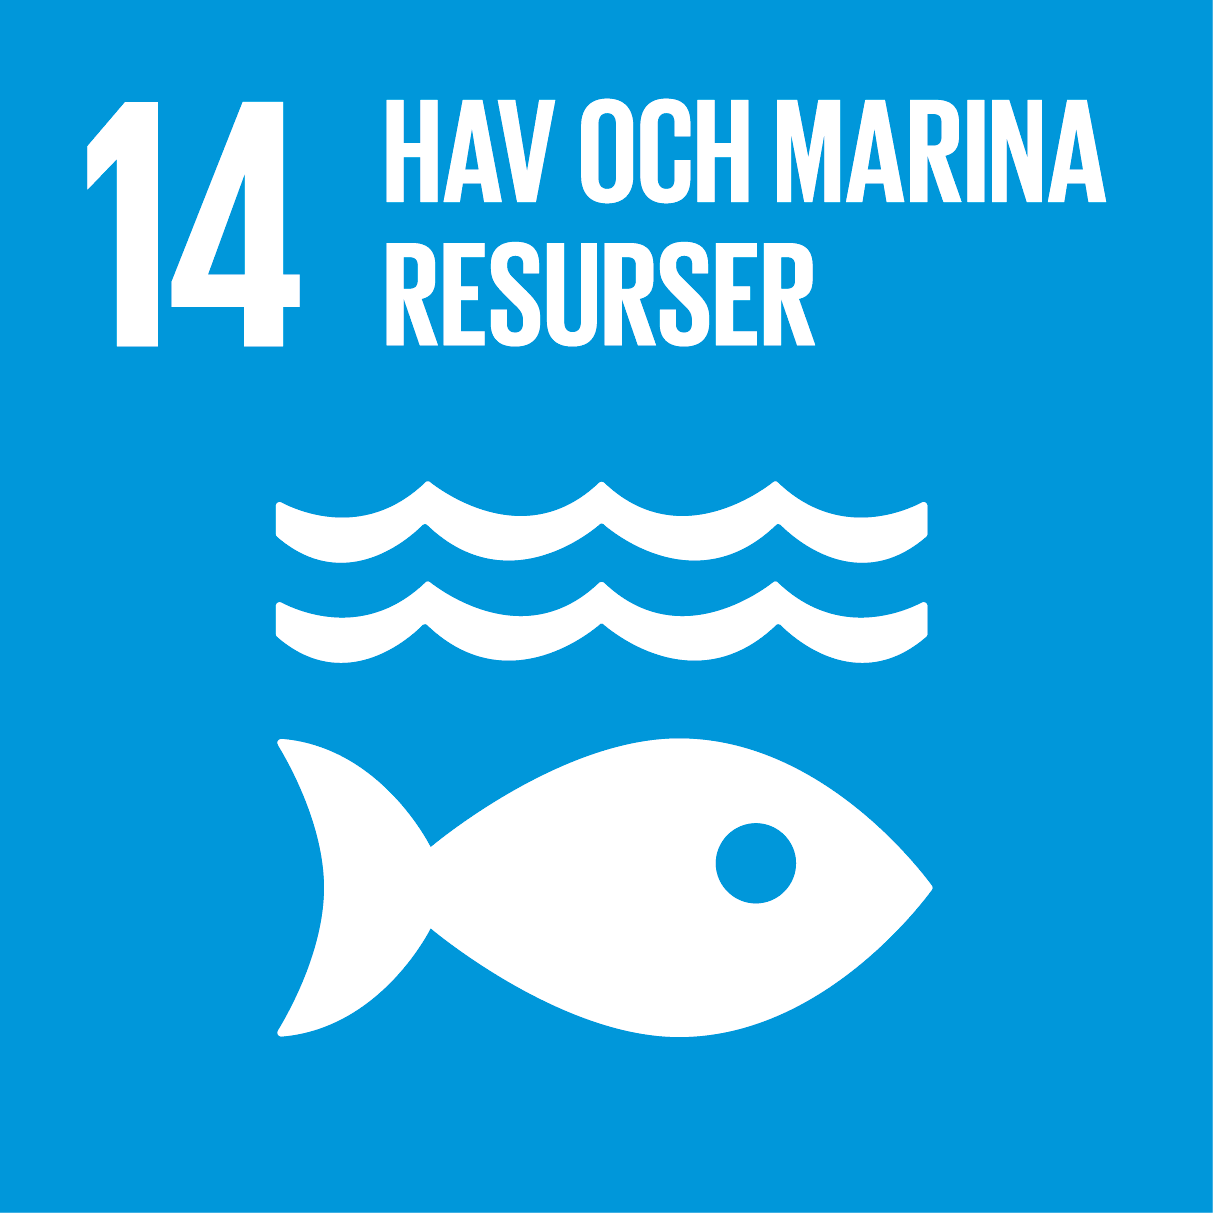 14. Hav och marina resurser. Blå kvadrat, text och symbol i vitt. En fisk under två våglinjer.